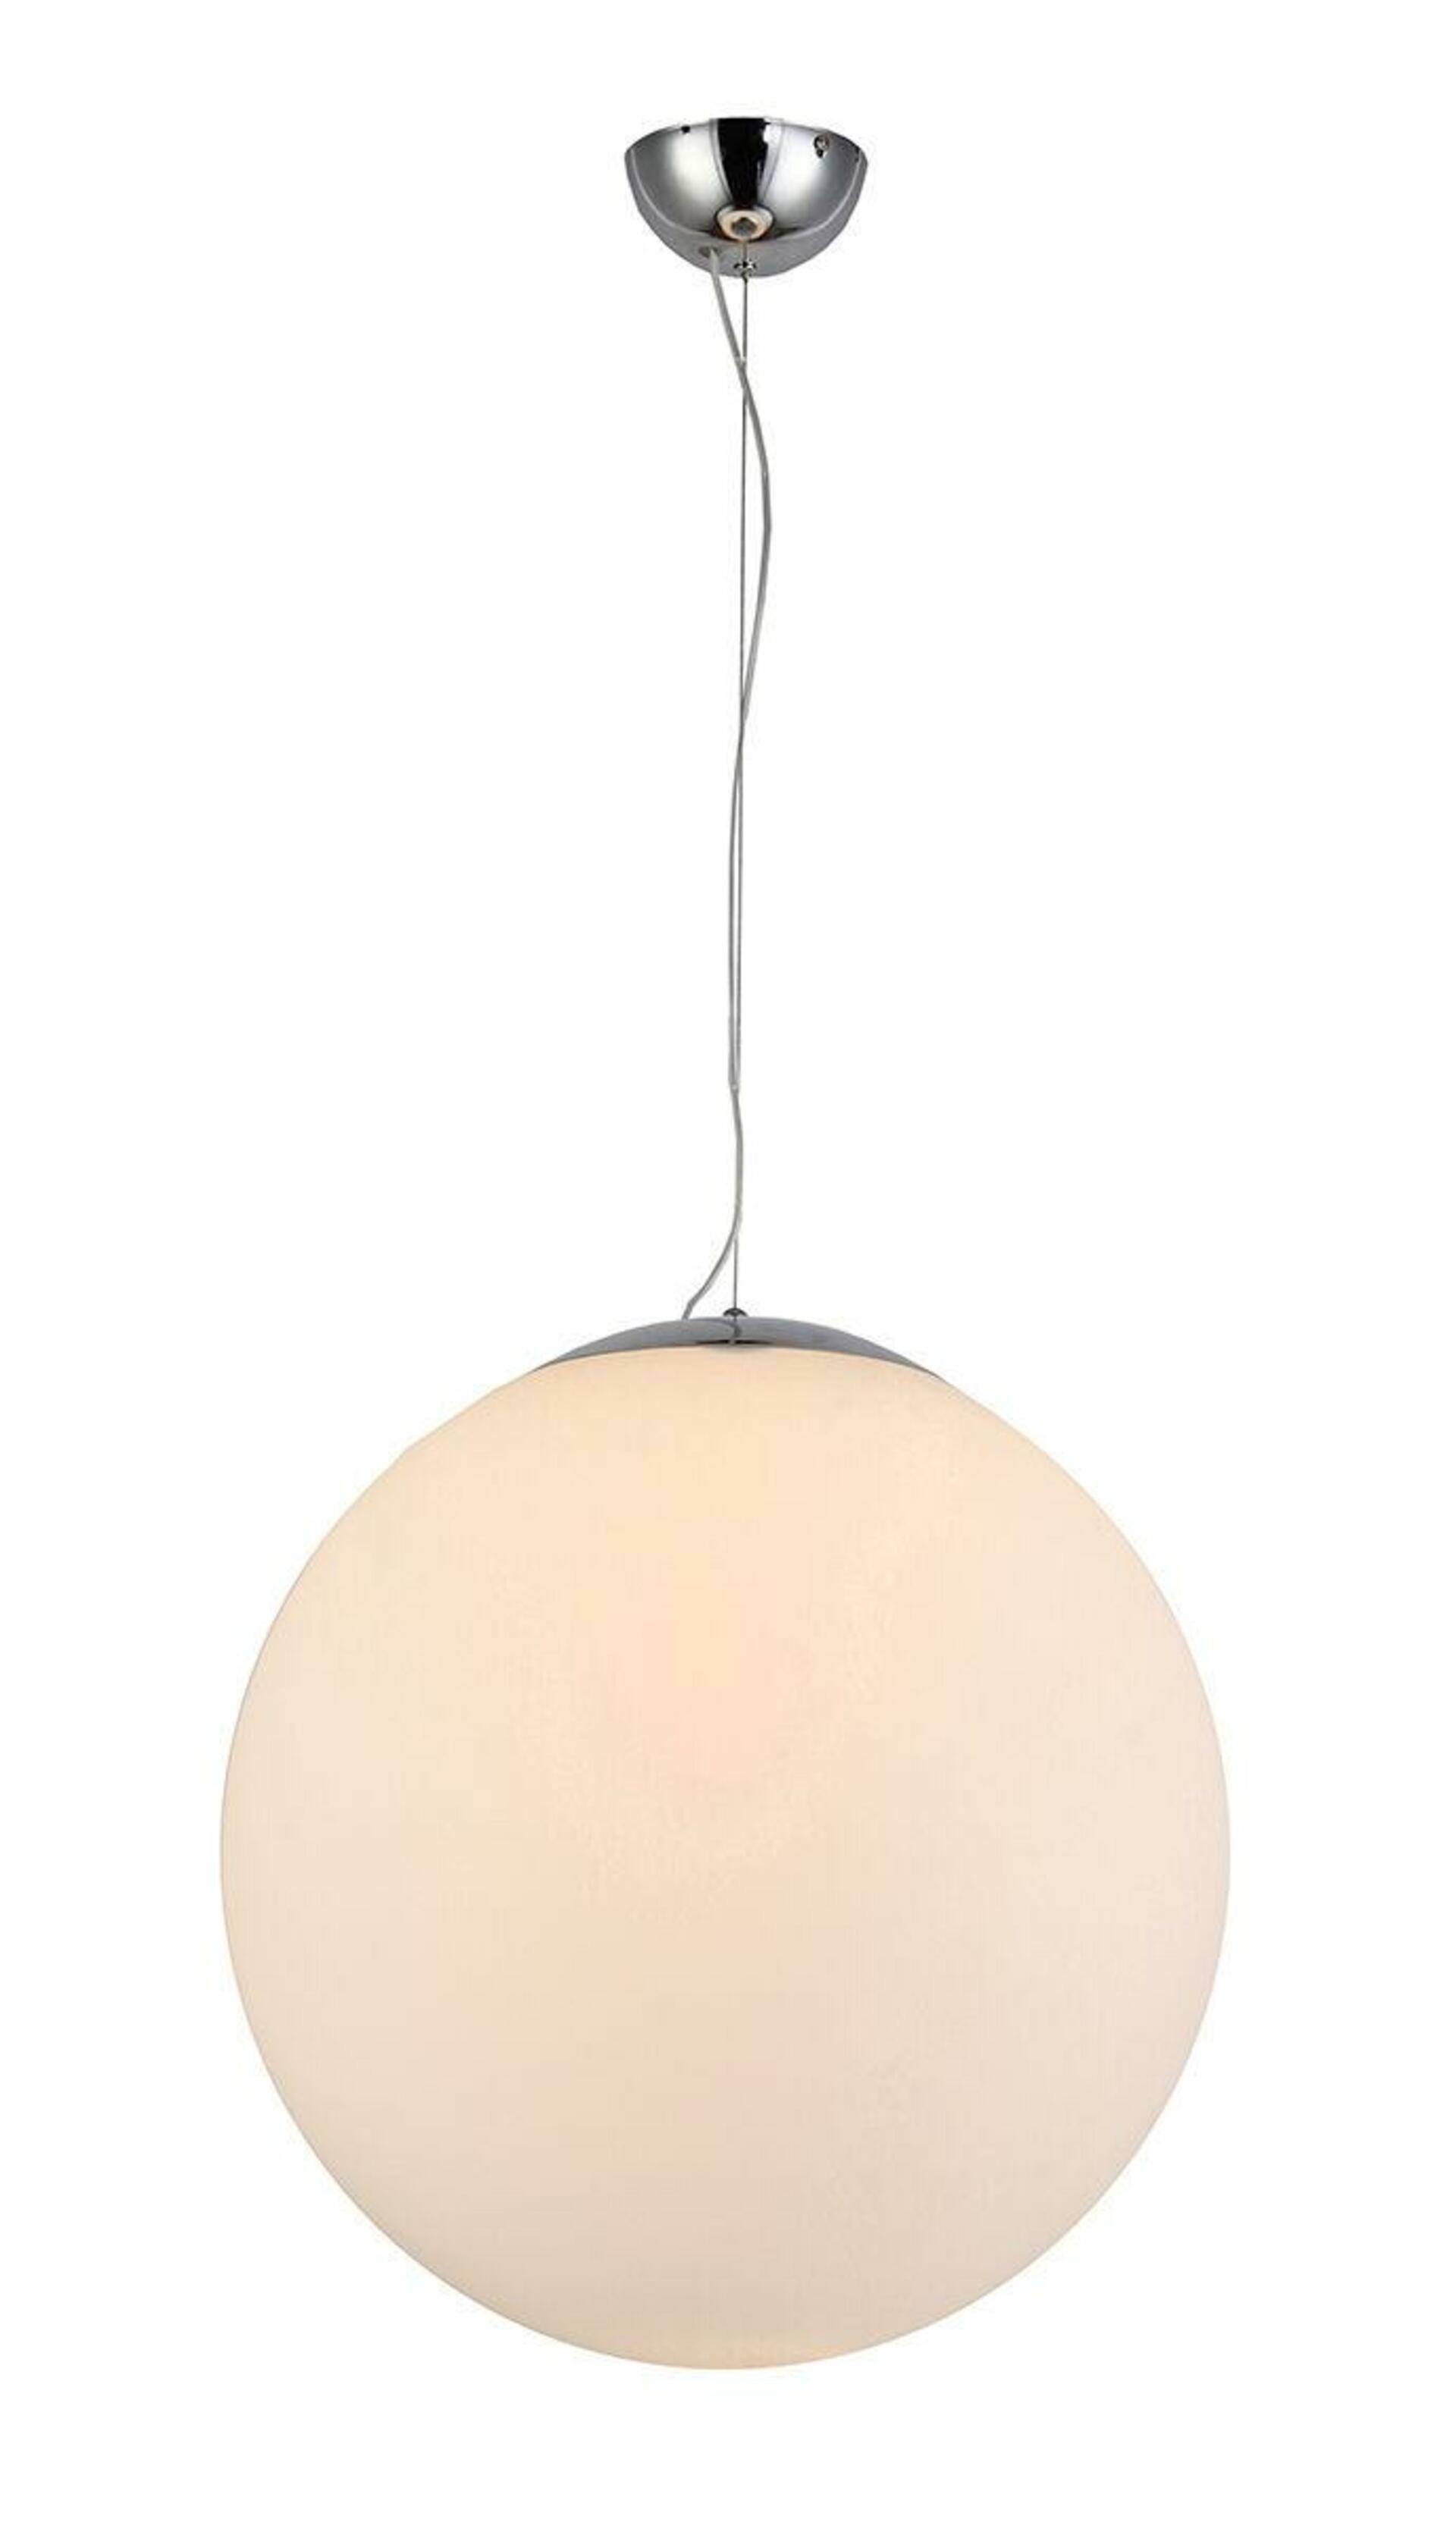 Levně AZzardo AZ2516 závěsné svítidlo White ball 30